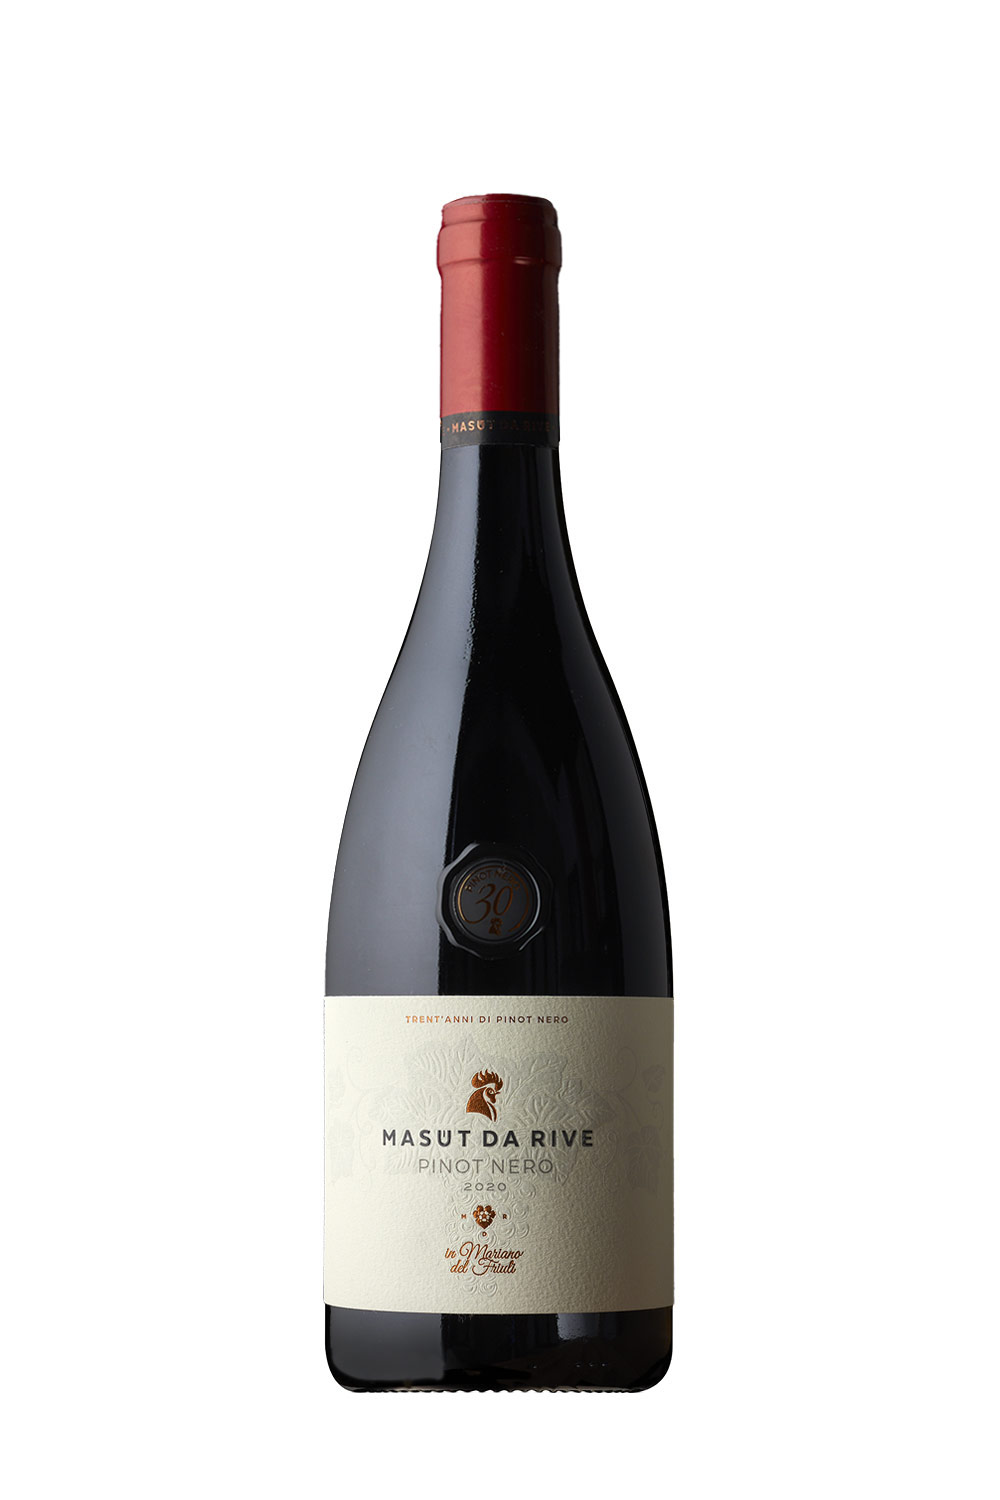 Senti Italien Vini DOC | Masut 30 Rive aus 2020 da Pinot kaufen - bei Nero Weine Online Jahre